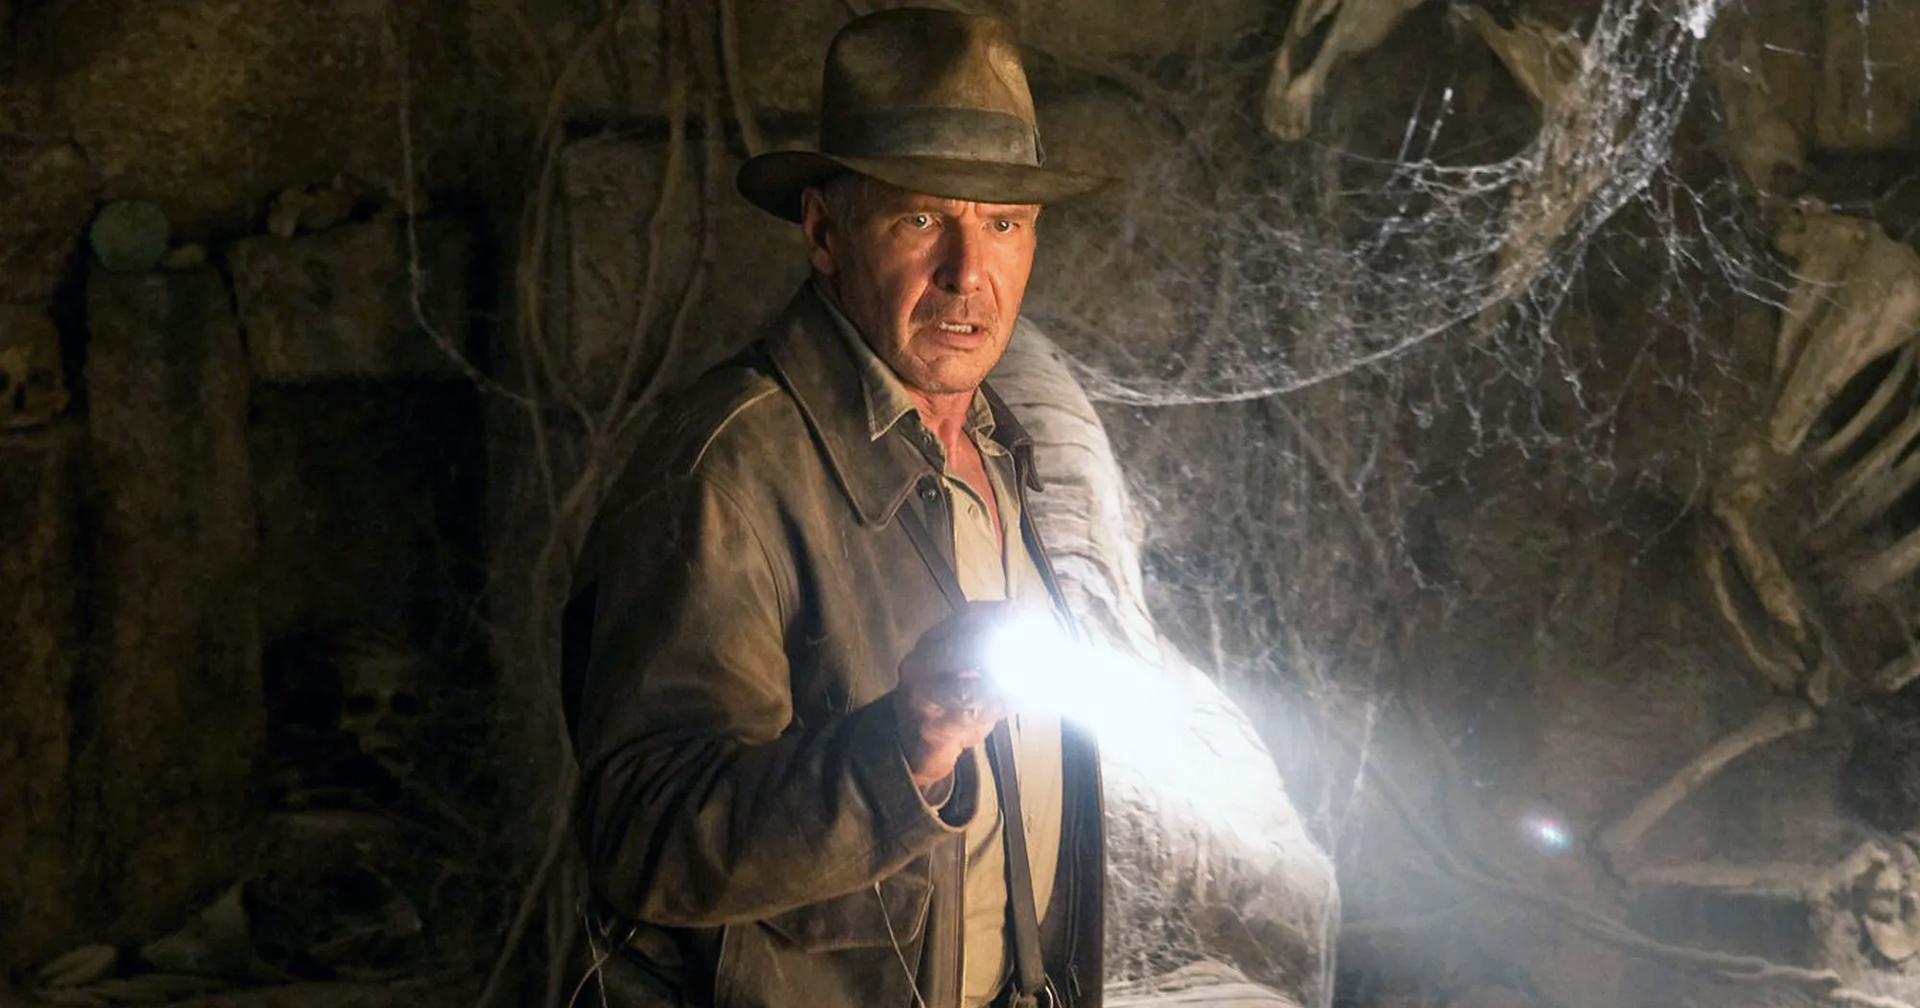 แฮร์ริสัน ฟอร์ด อาจยุติการแสดง หลังเสร็จสิ้นภารกิจจาก ‘Indiana Jones 5’